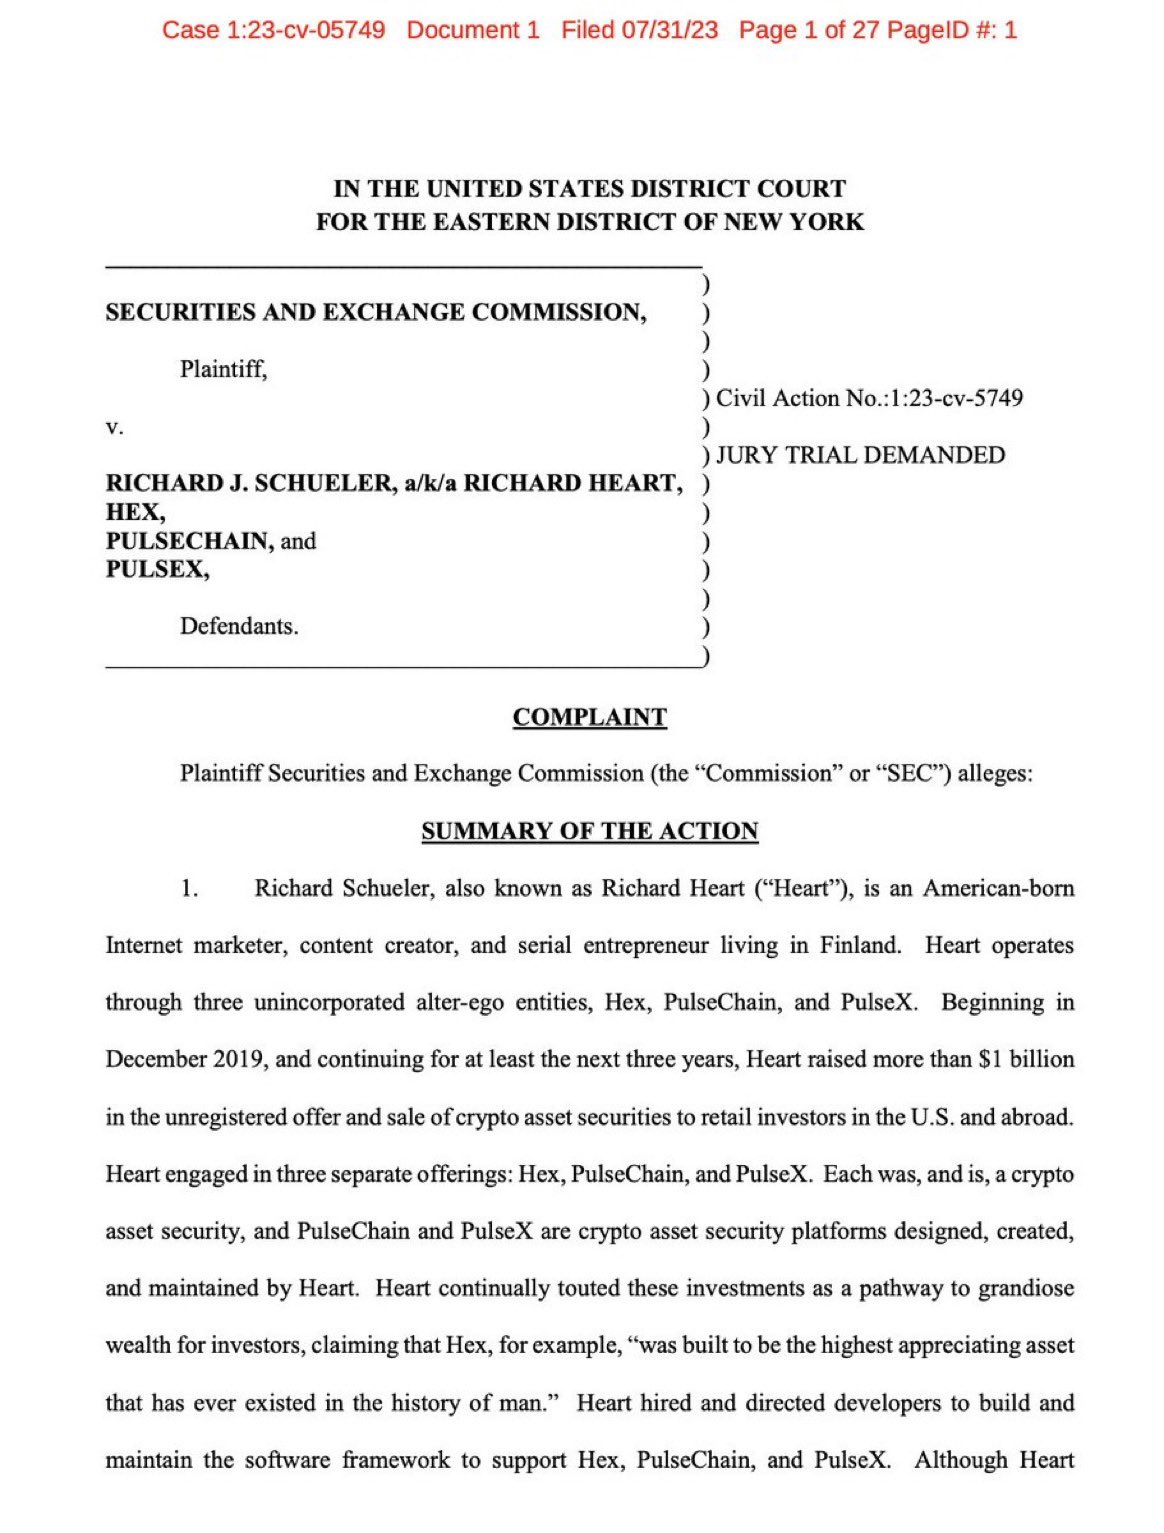 SEC filing against Richard Heart